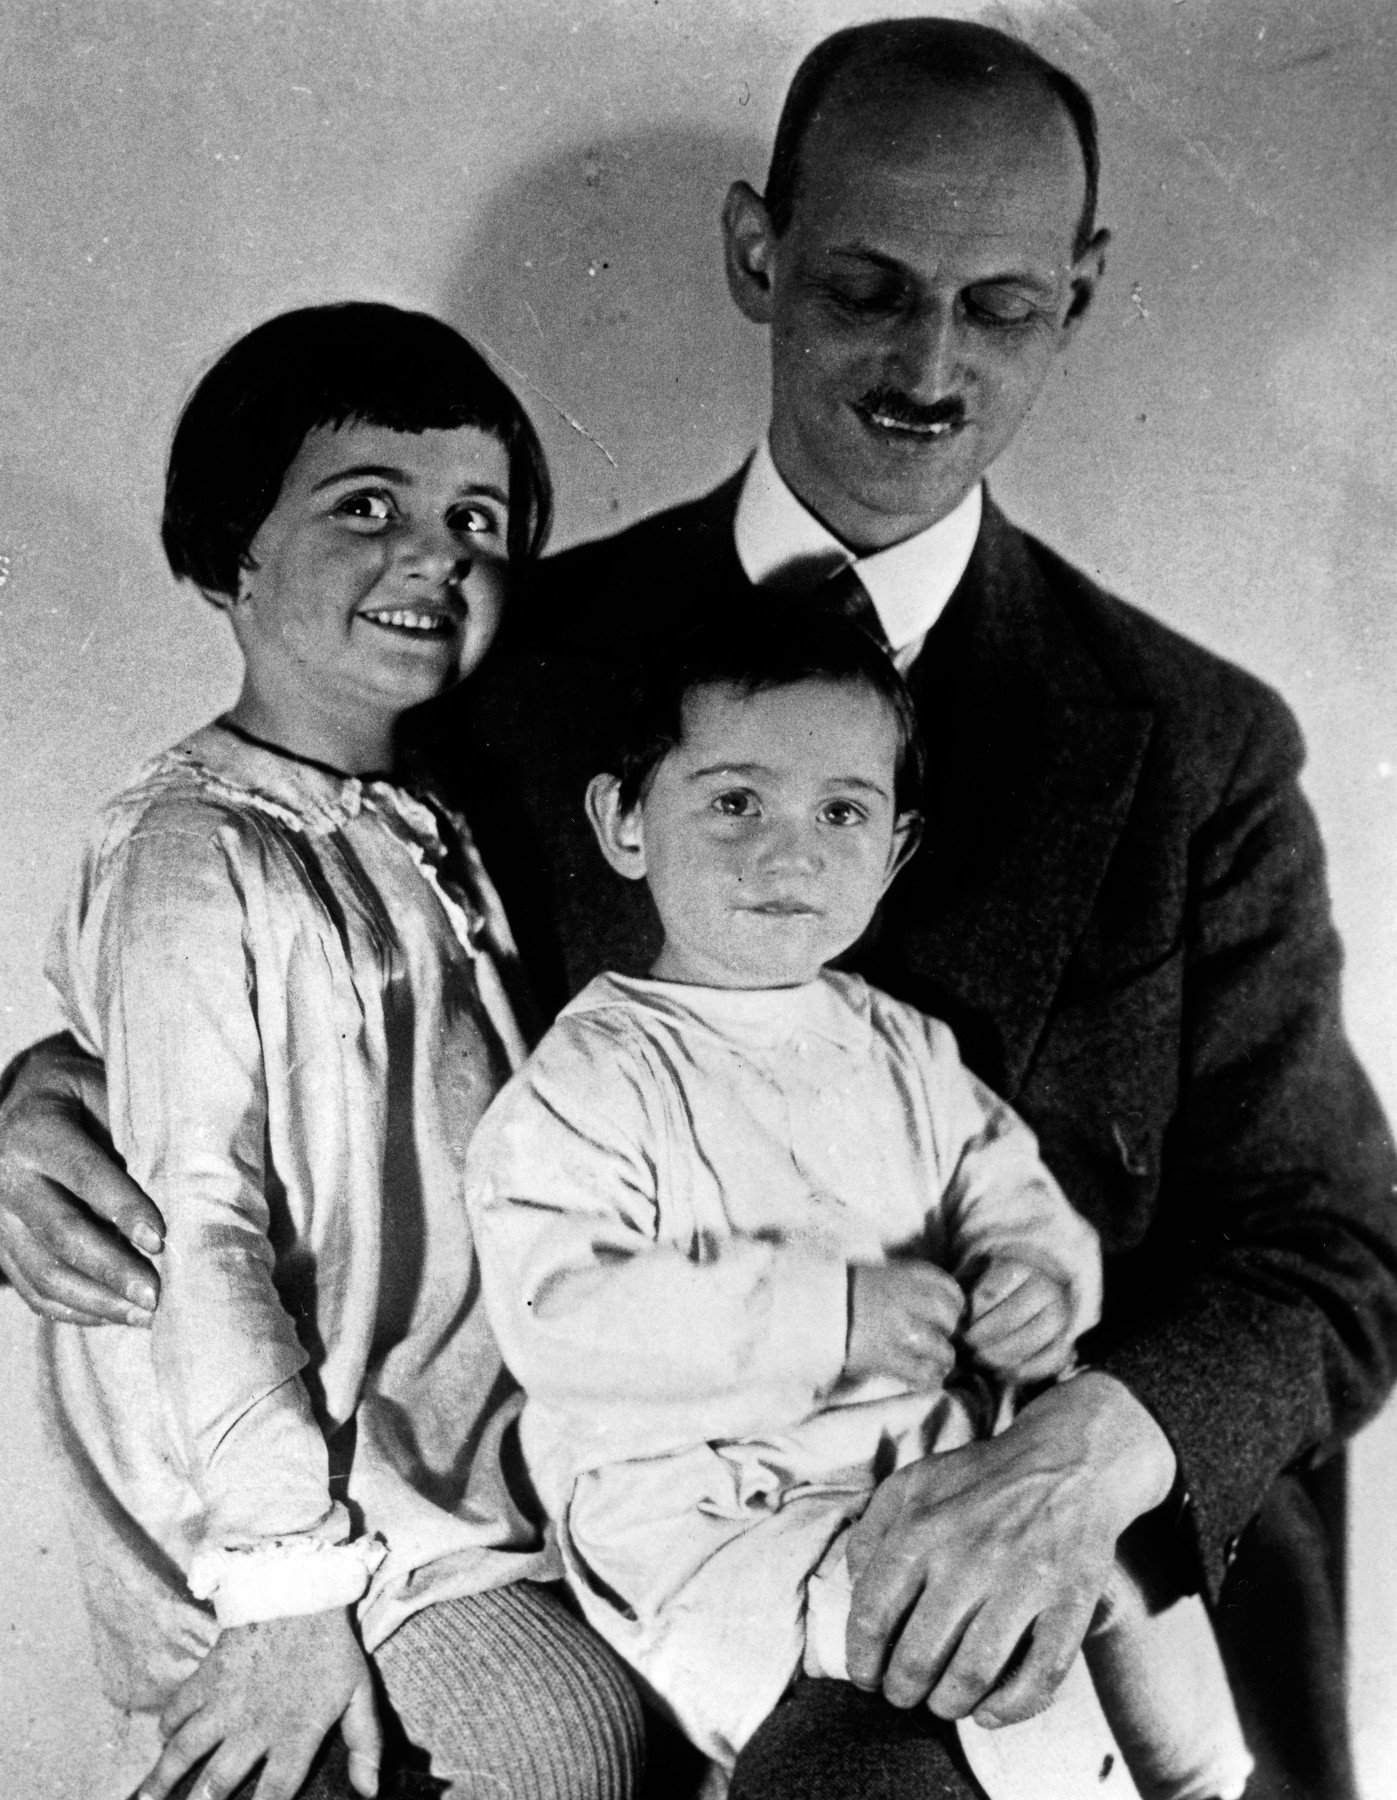 Anne je rođena 1929. godine u Frankfurtu, u židovskoj obitelji. Imala je oca Otta, majku Edith i sestru Margot.